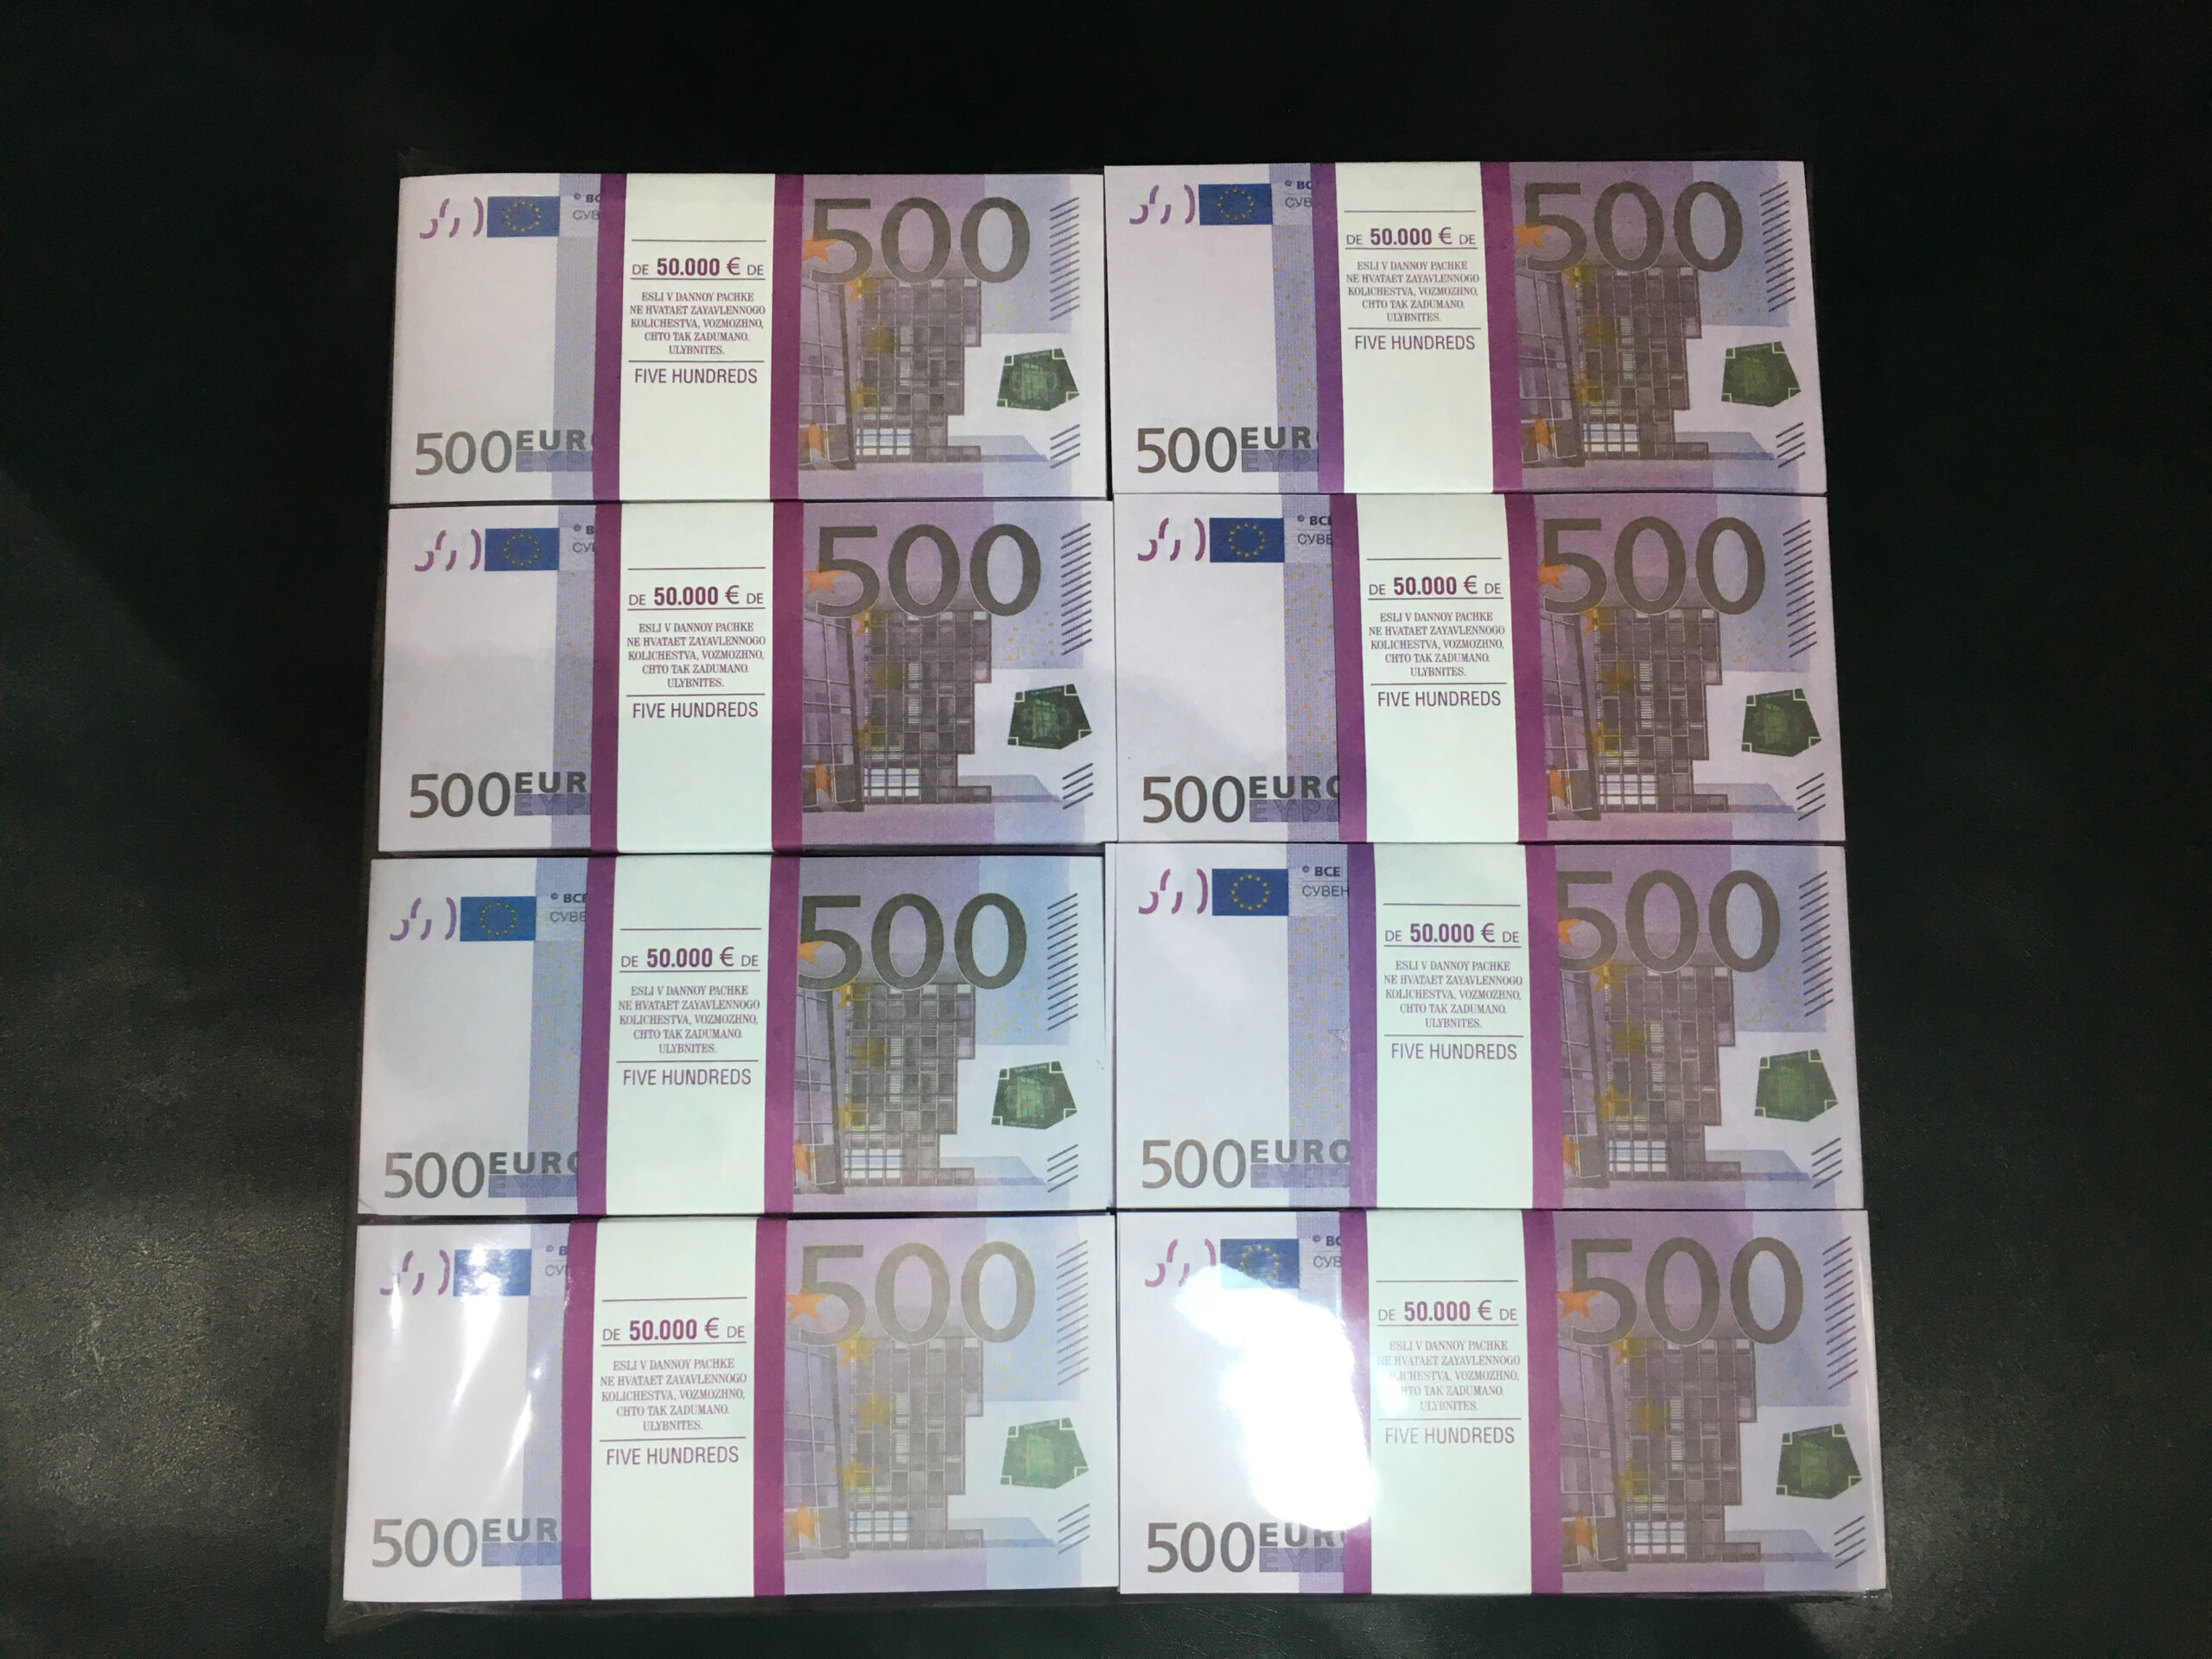 500 000 рублей в евро. Фальшивые купюры 500 евро. Евро в банковской упаковке. Пачка денег 500 евро. 500 Евро пачка.